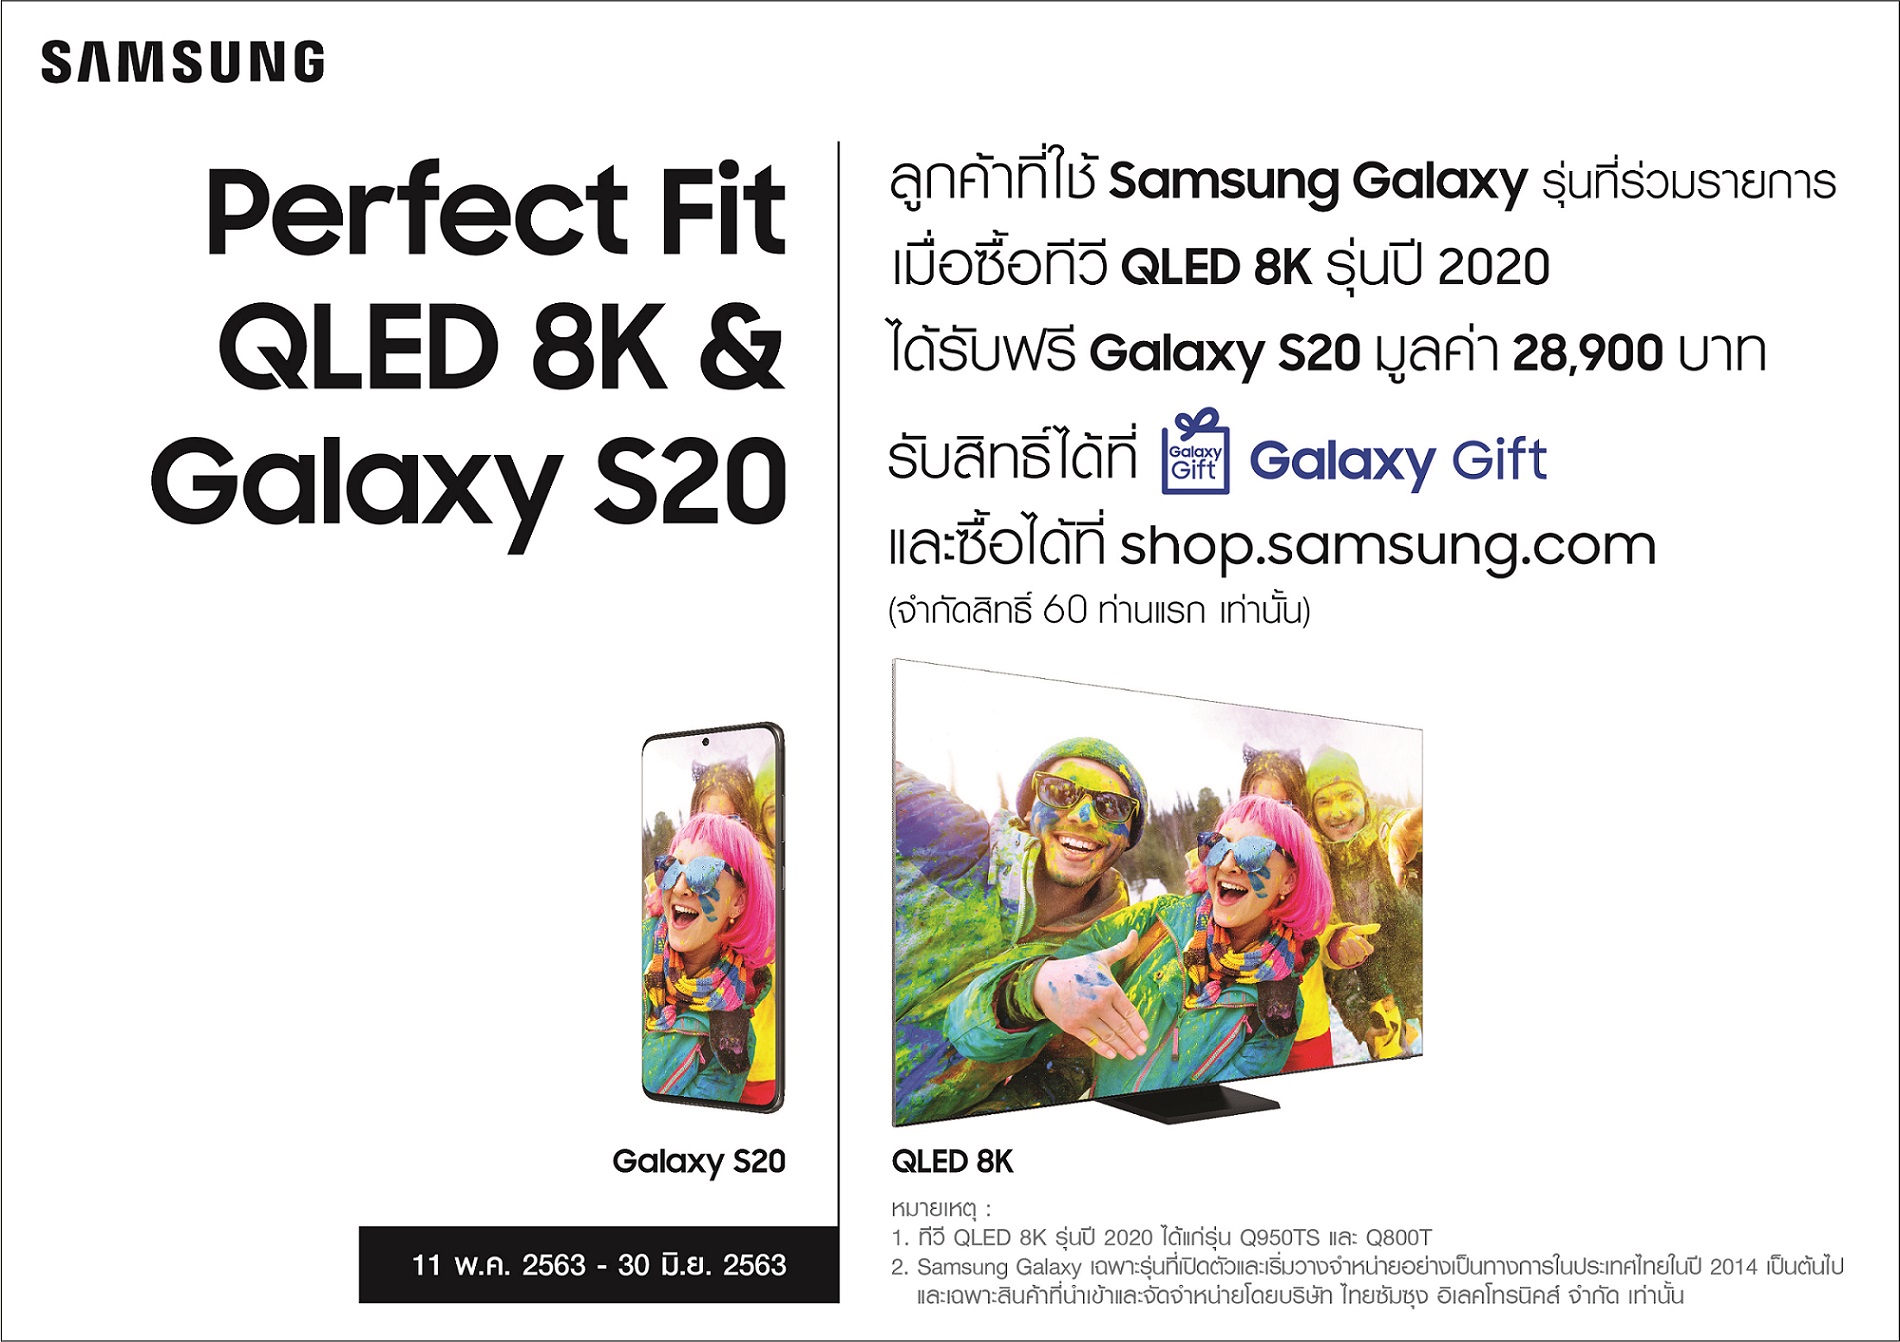 Samsung ชวนสัมผัสความลงตัวที่สมบูรณ์แบบสุดพรีเมี่ยม QLED 8K ทีวี ไลน์อัพปี 2020 ซื้อวันนี้รับฟรี Galaxy S20